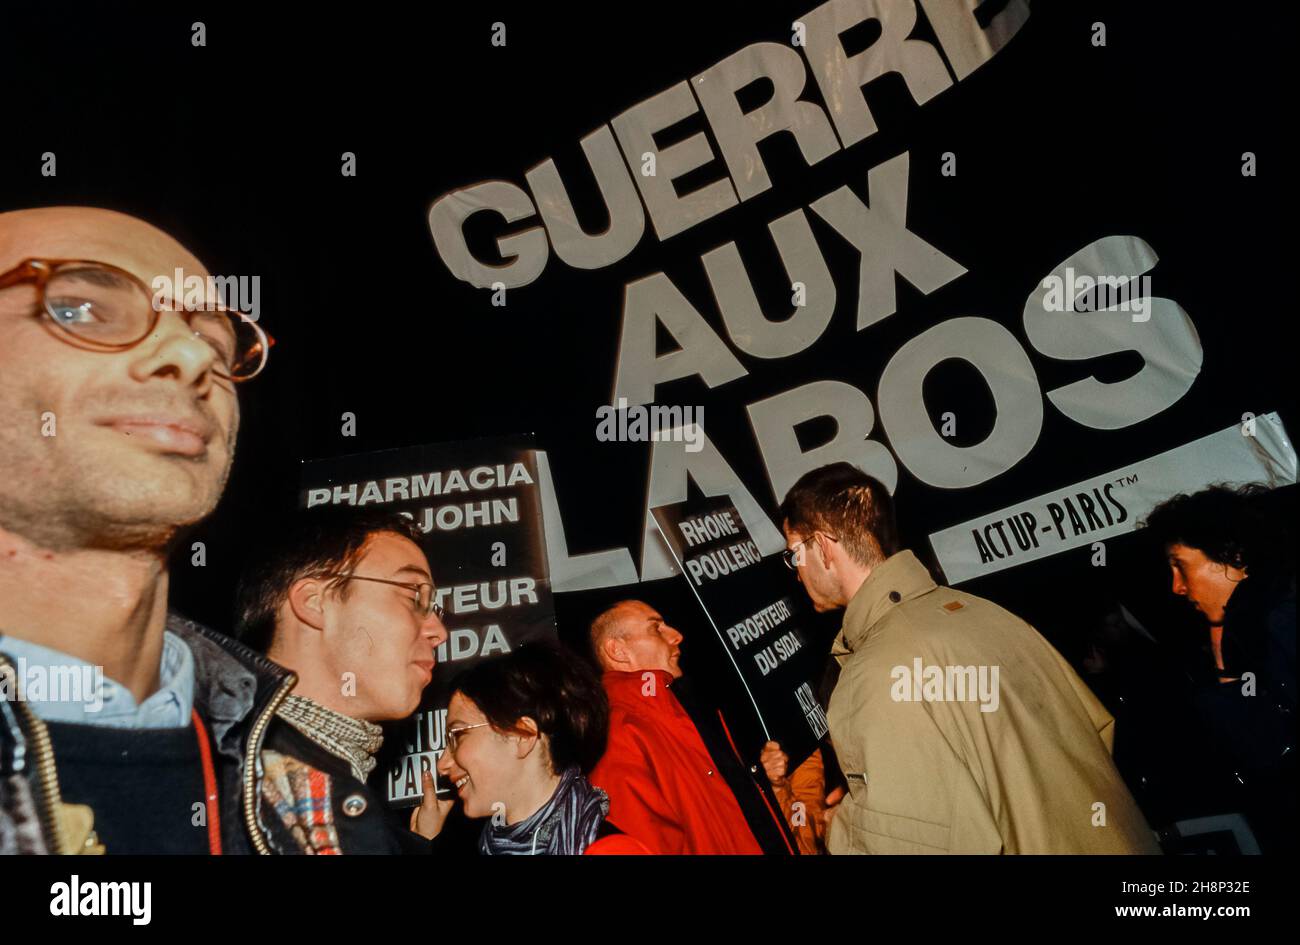 Paris, France, Crowd AIDS Activists Act Up Paris NGO Marching World AIDS Day, Dec. 1,  Anti Big Pharma Slogans, 1999 'Guerre aux labos' Stock Photo